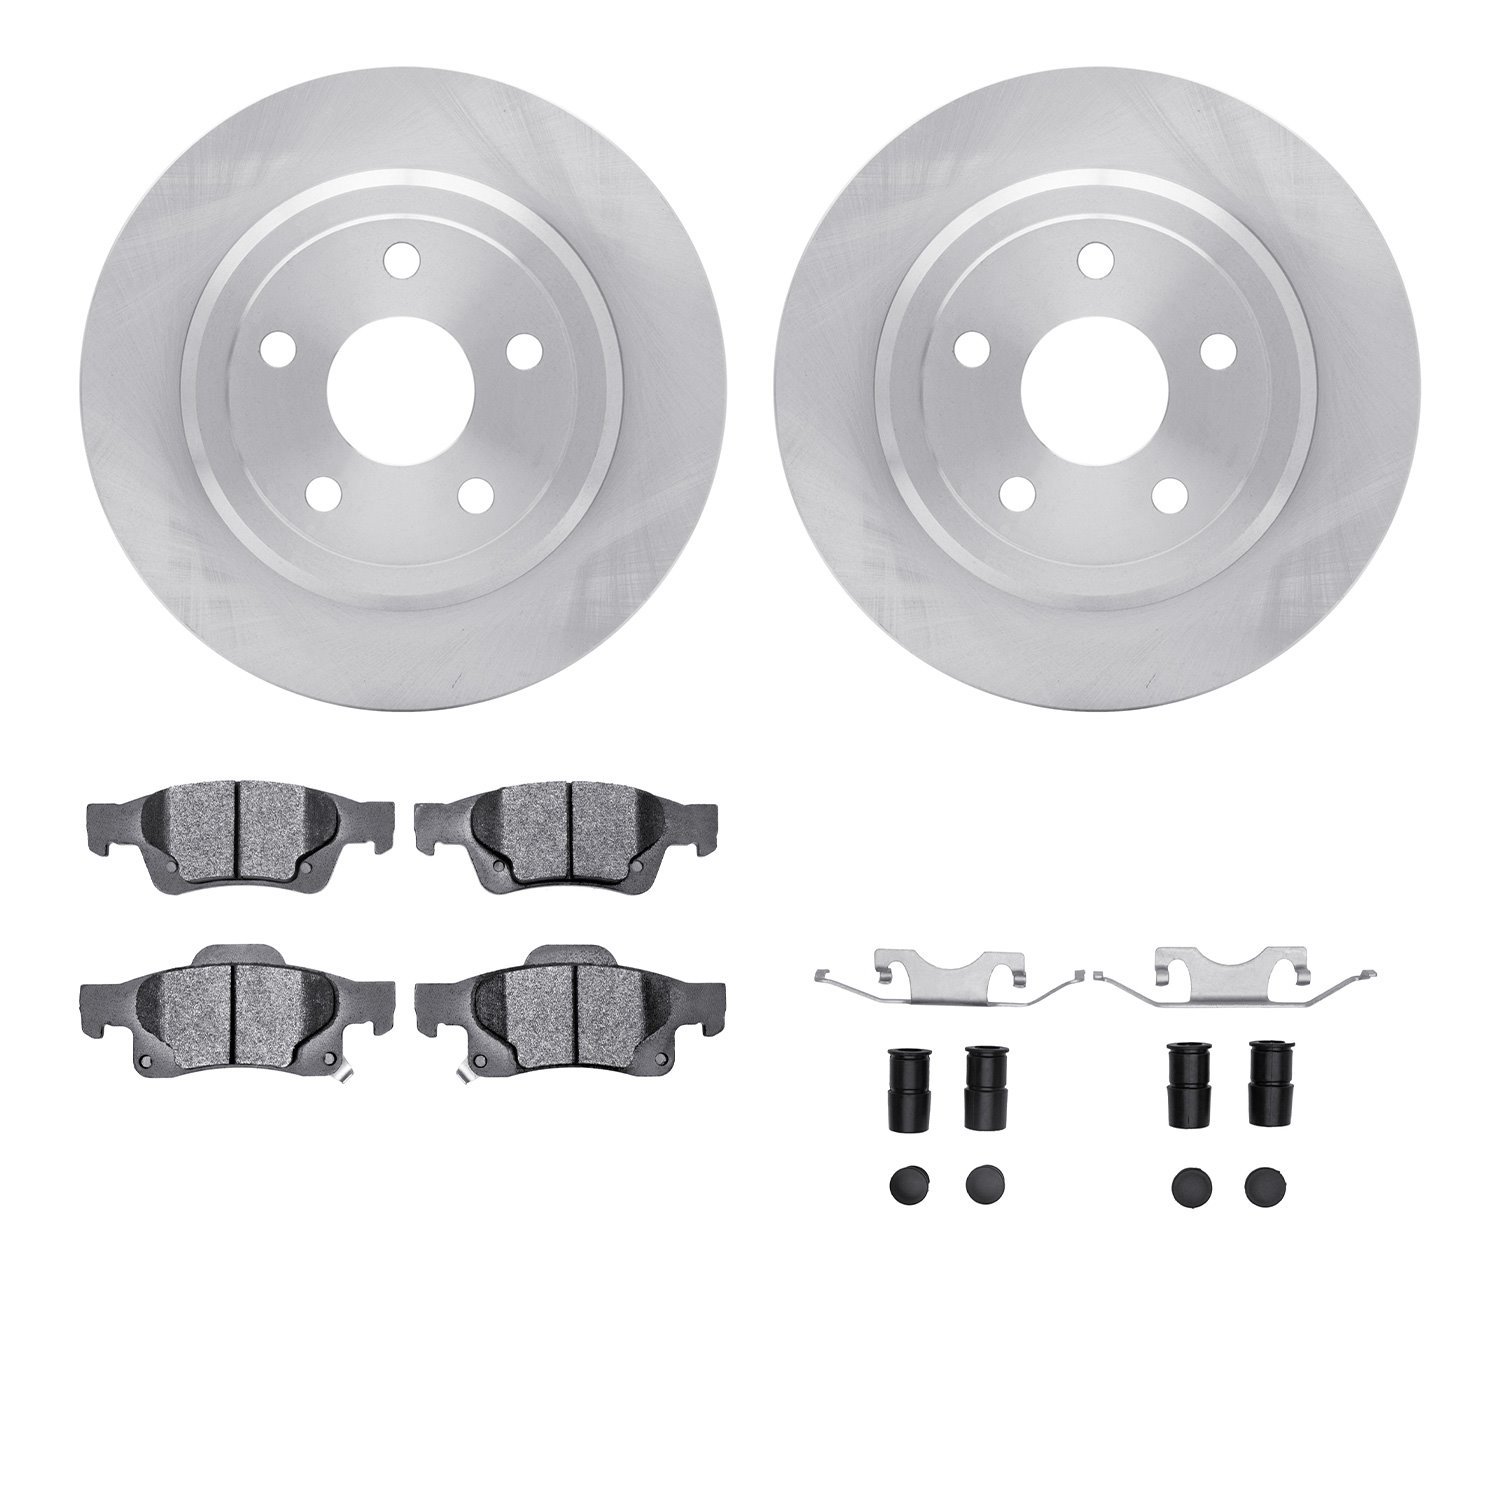 6212-42001 Brake Rotors w/Heavy-Duty Brake Pads Kit & Hardware, Fits Select Mopar, Position: Rear